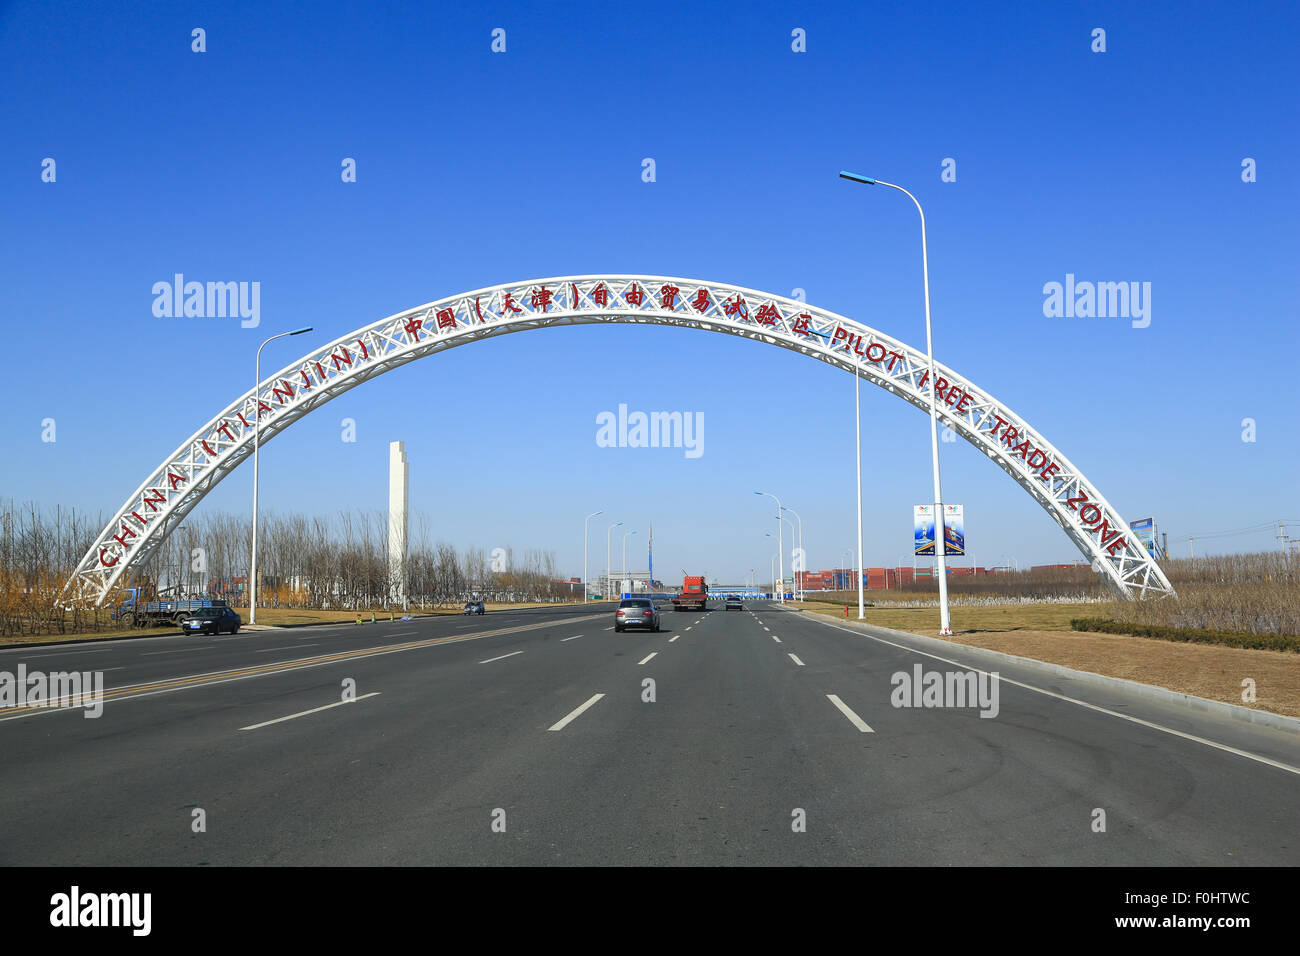 China (Tianjin) Pilot Free Trade Zone anmelden Autobahn, die vom Hafen und Schiff Kreuzfahrtterminal. Stockfoto